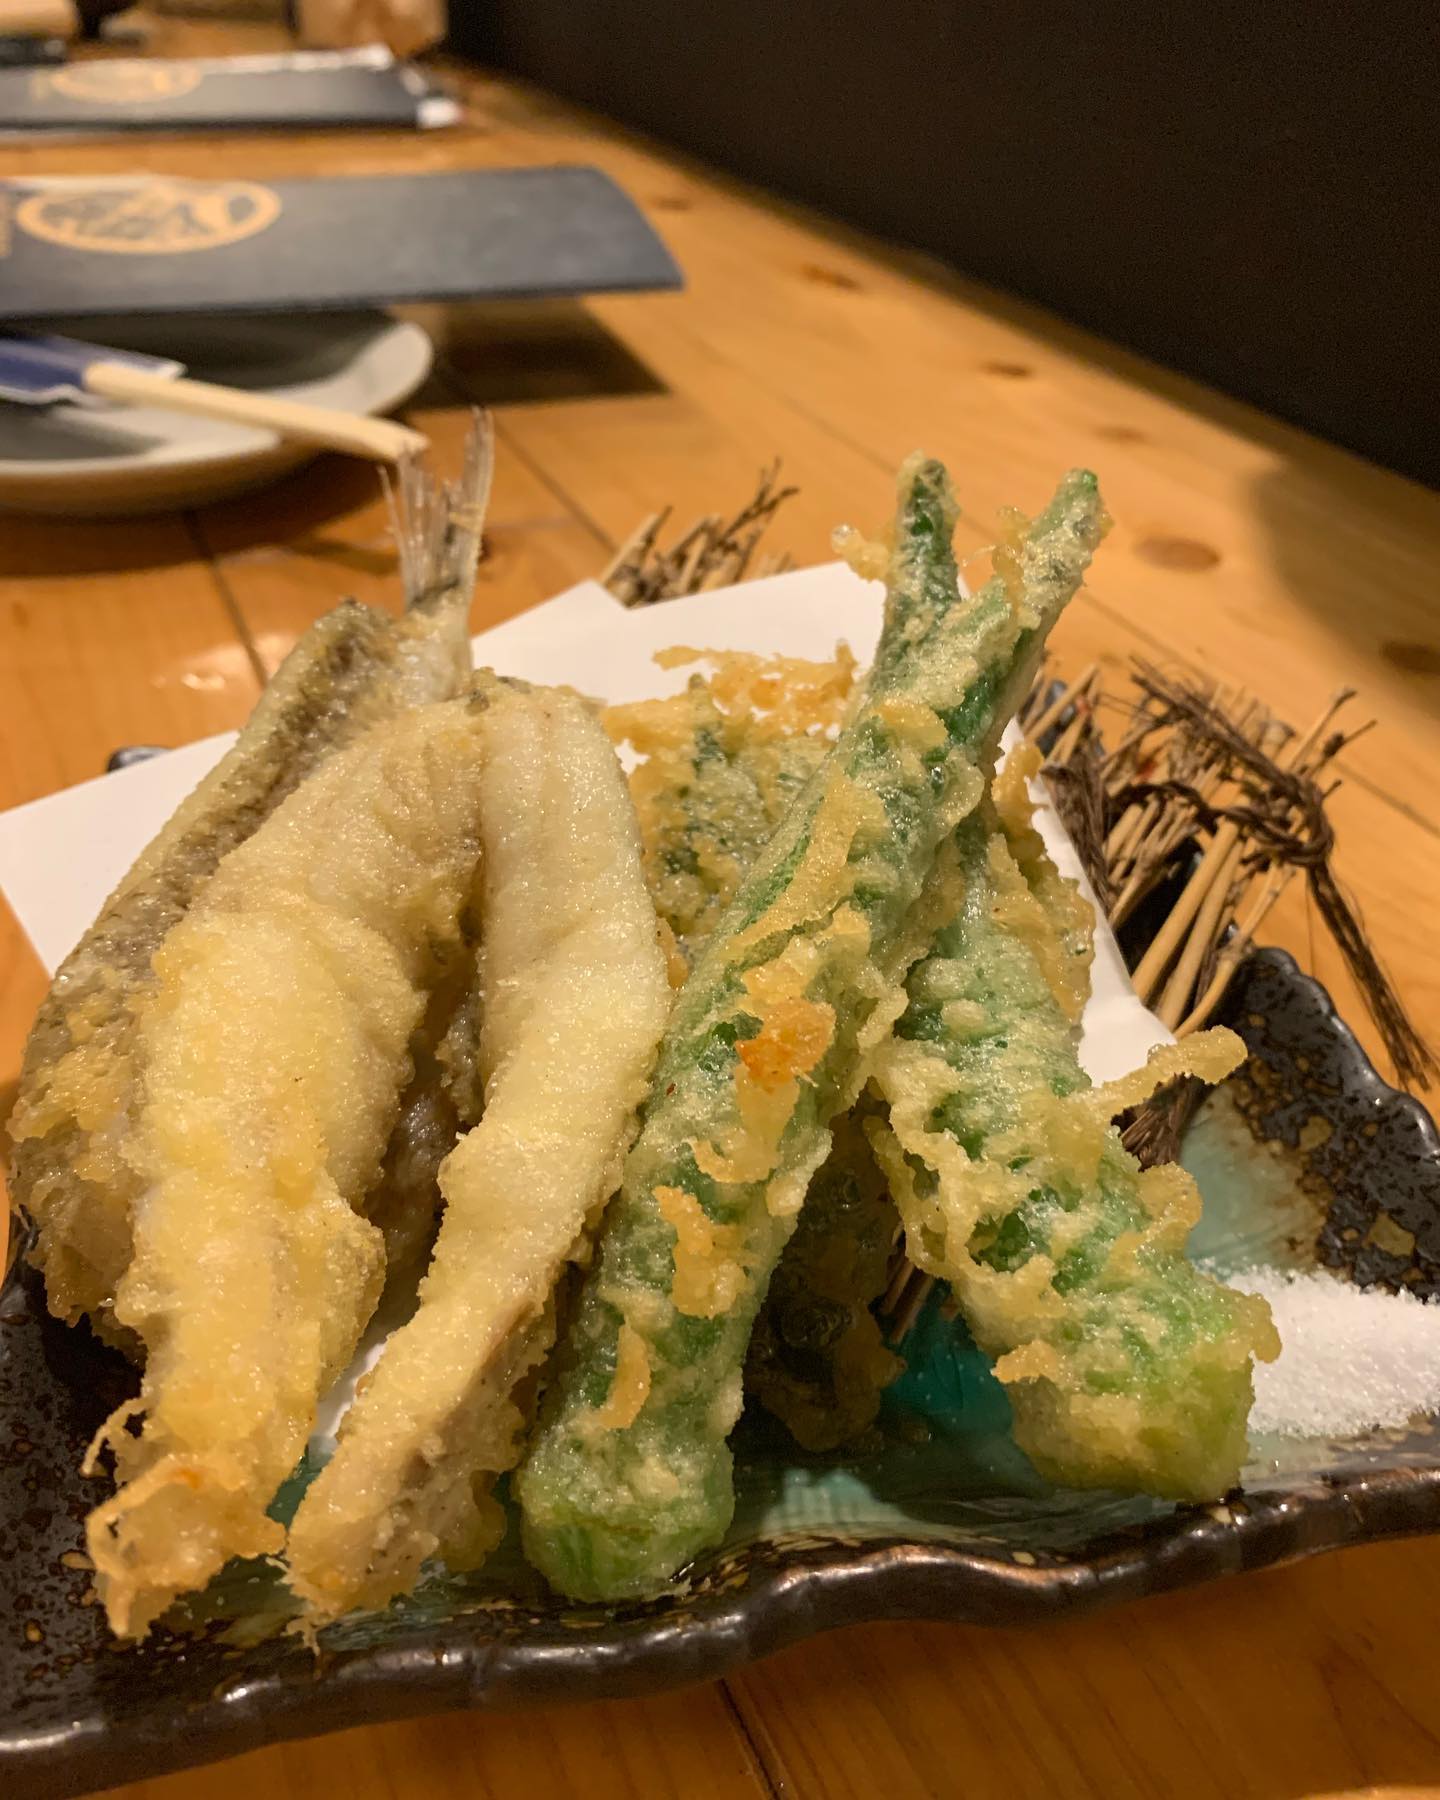 鱚の天ぷら
幸せを呼ぶ魚キスこの幸せな味を夏野菜の天ぷらとともにどうぞ